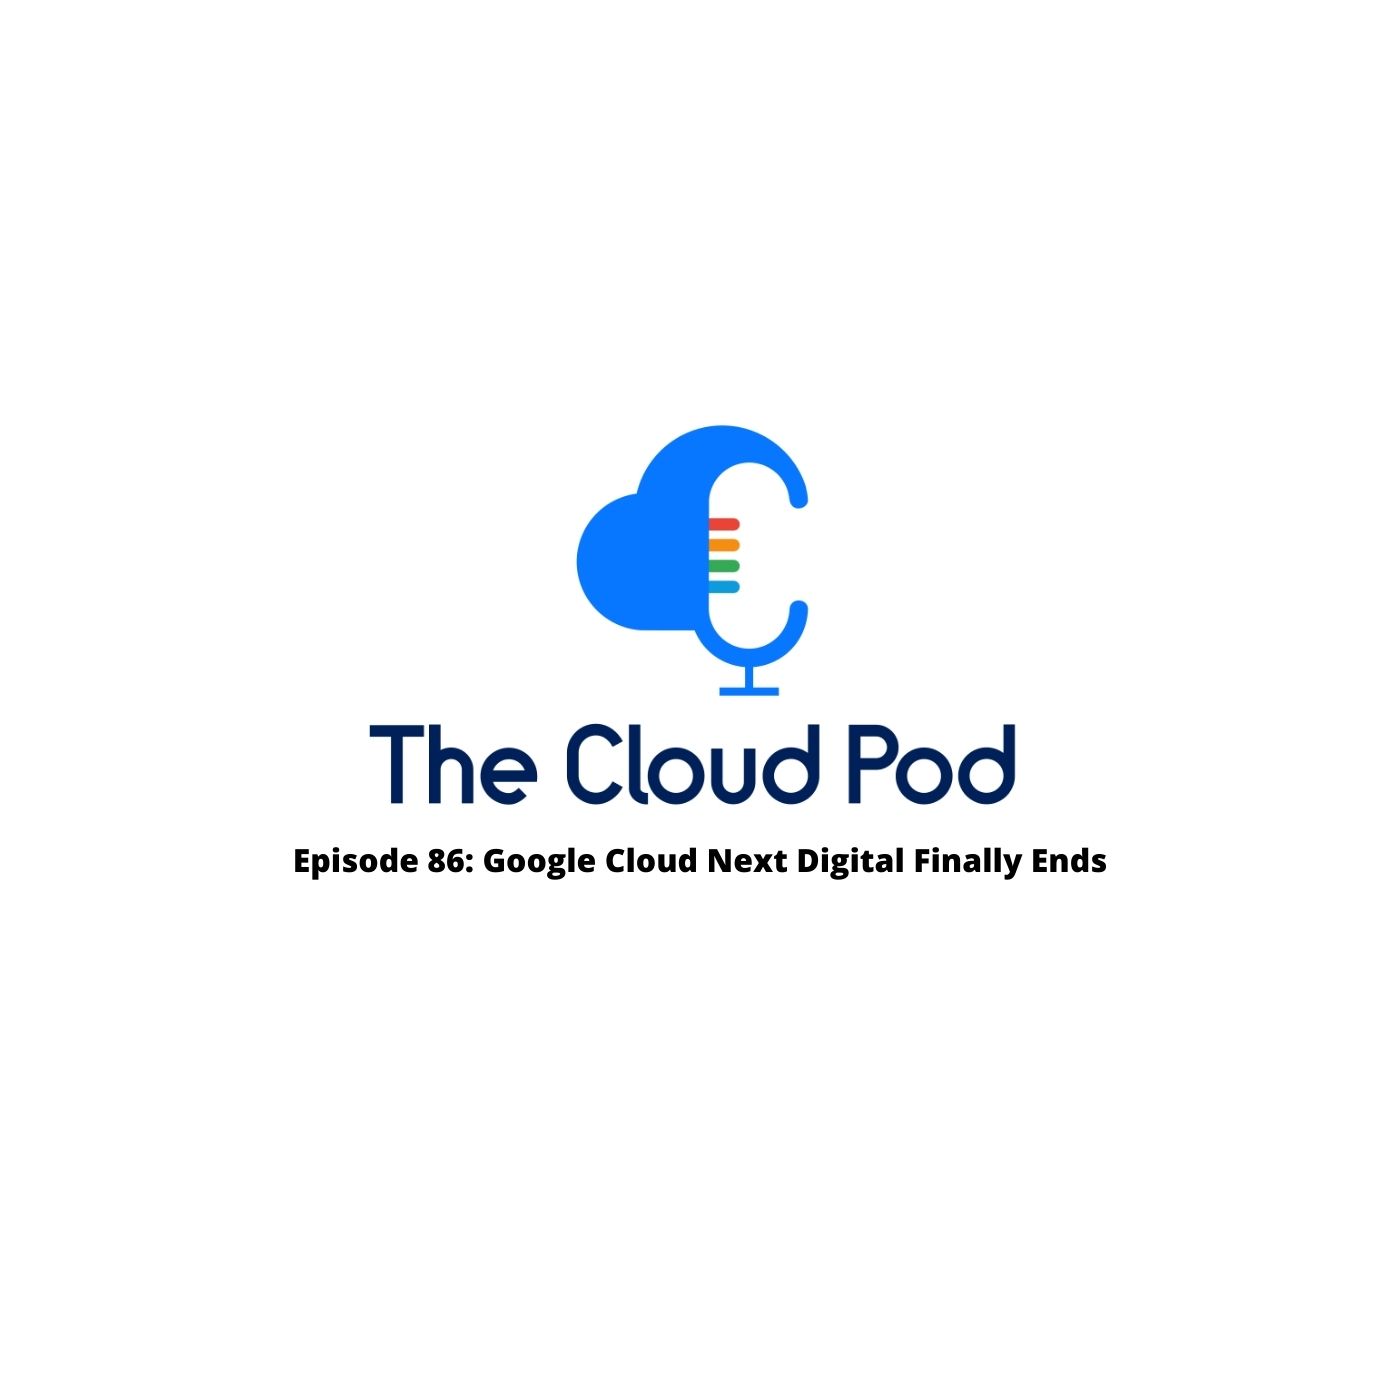 Episode 86 - Google Cloud Next Digital Finally Ends